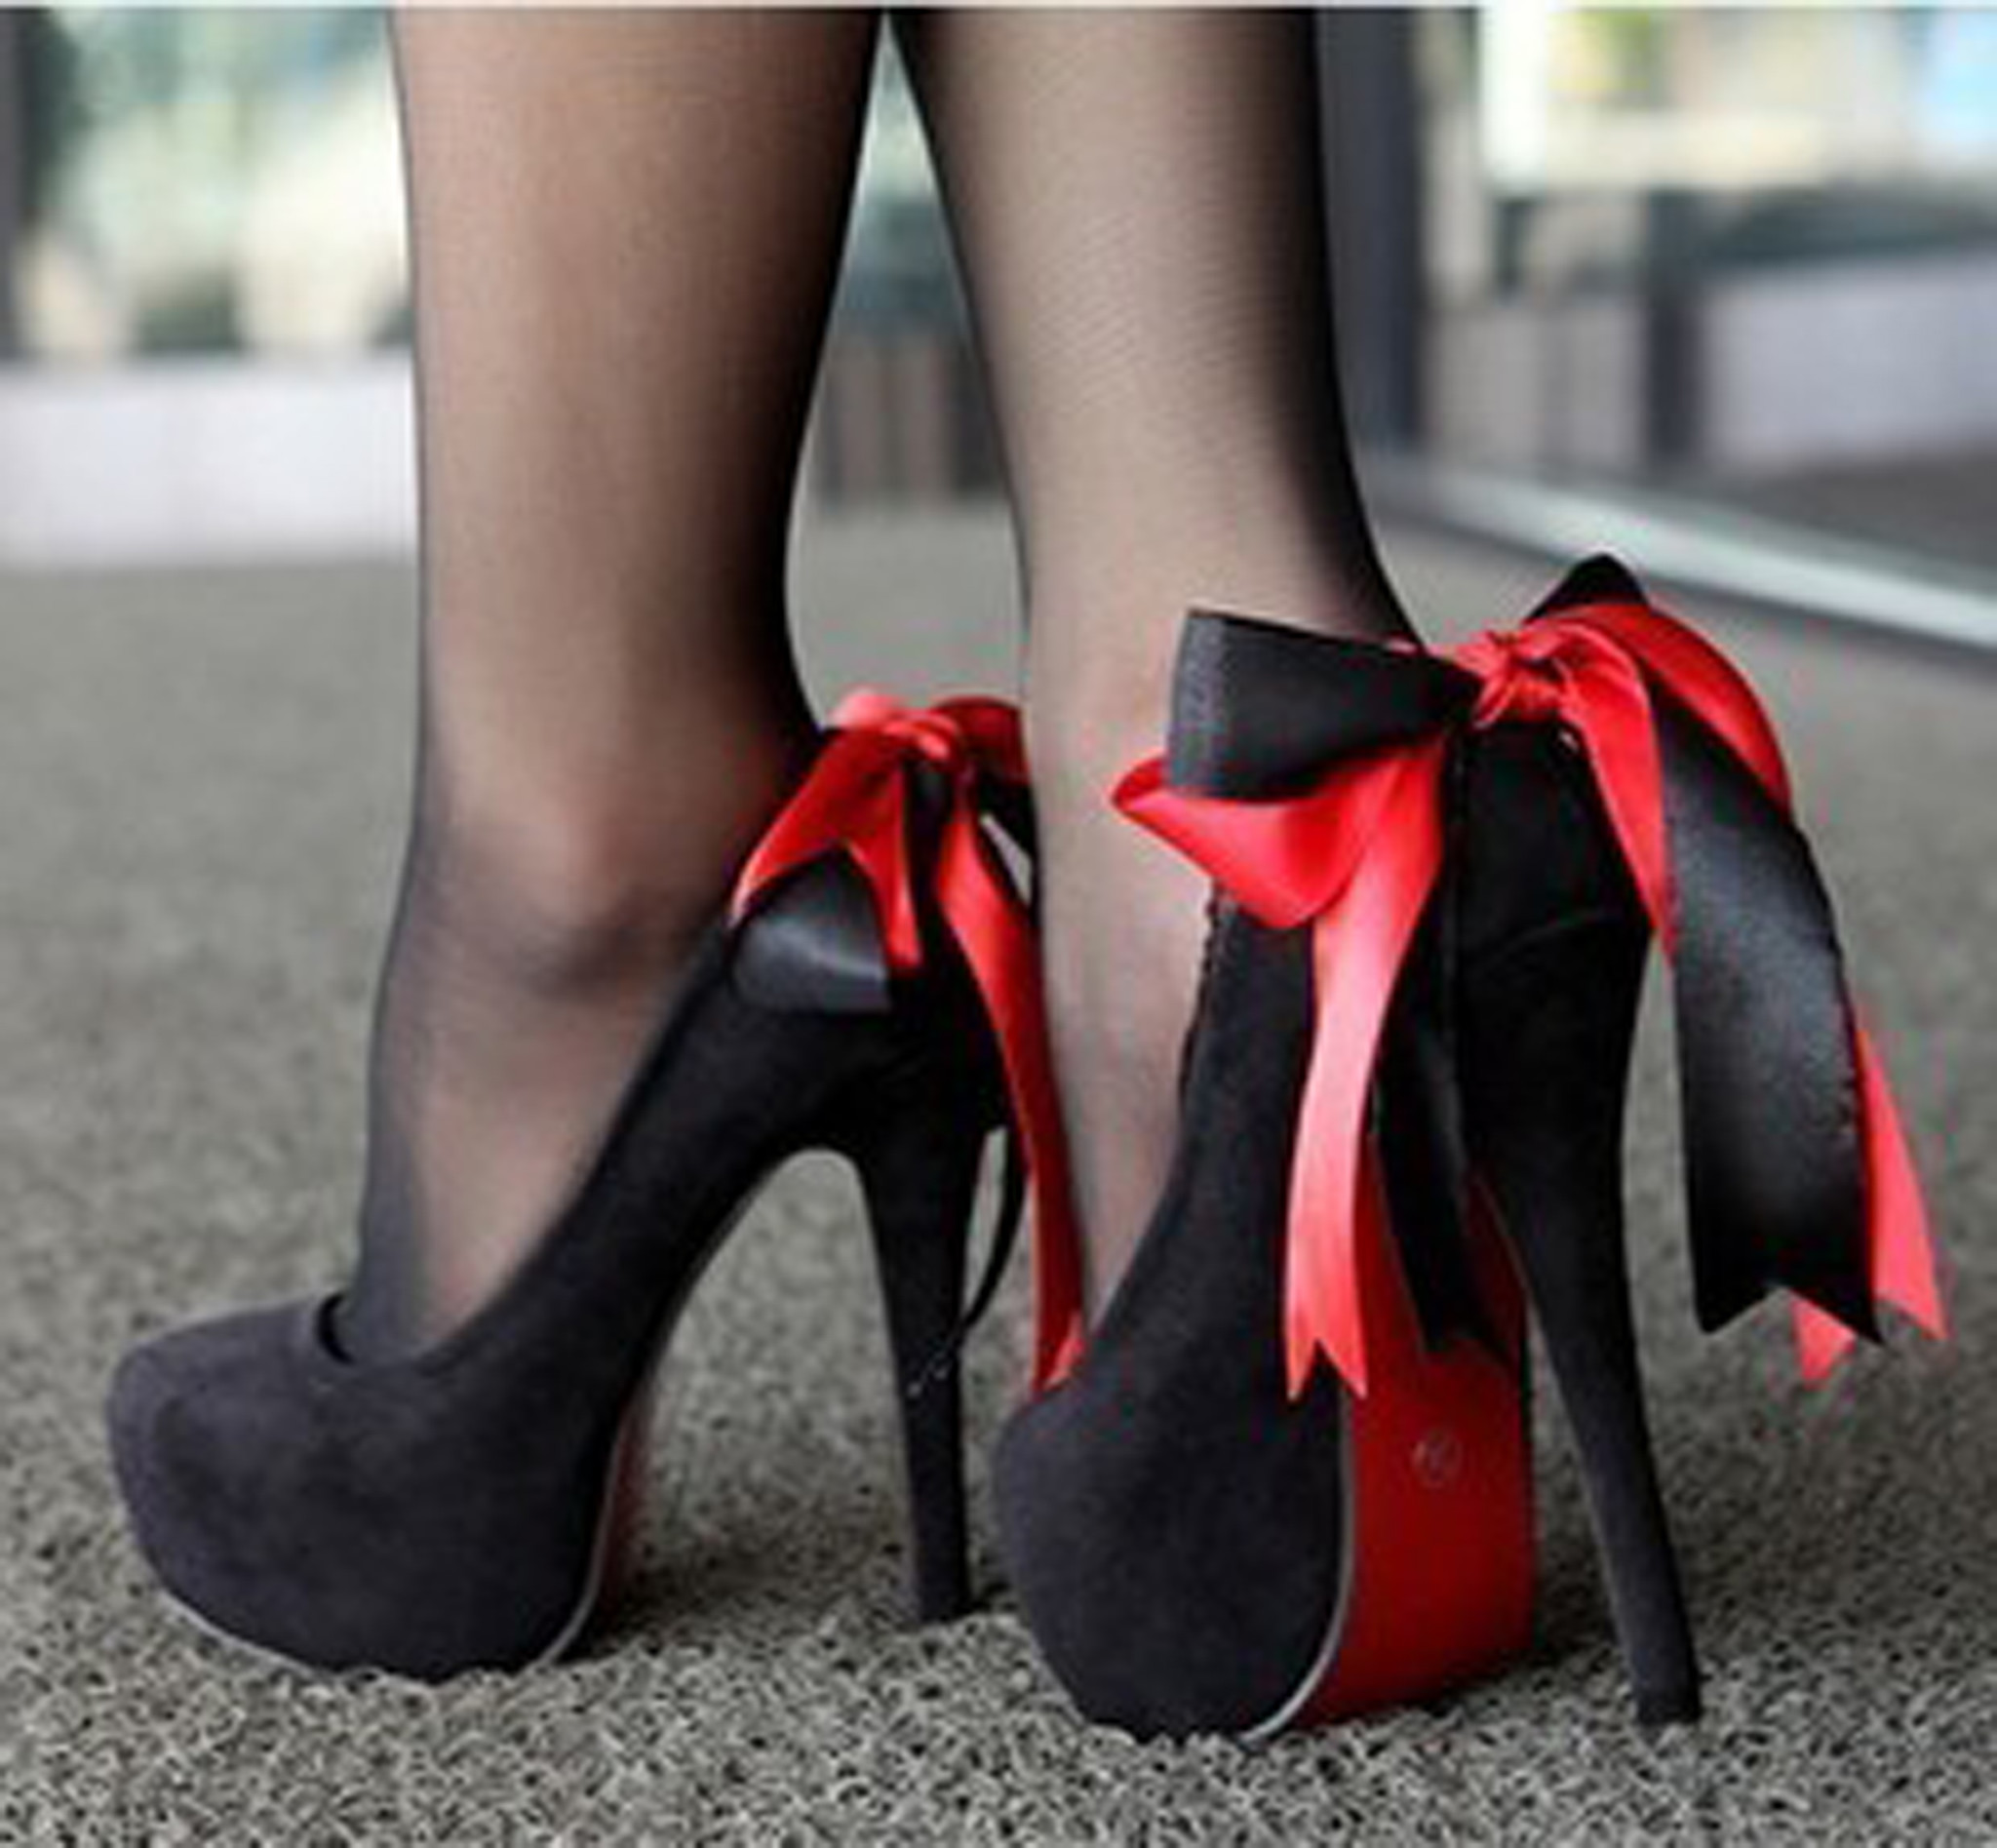 Сонник черные туфли. Туфли с бантиком. Красные туфли с бантом. Черные туфли с бантом. Туфли на каблуке.